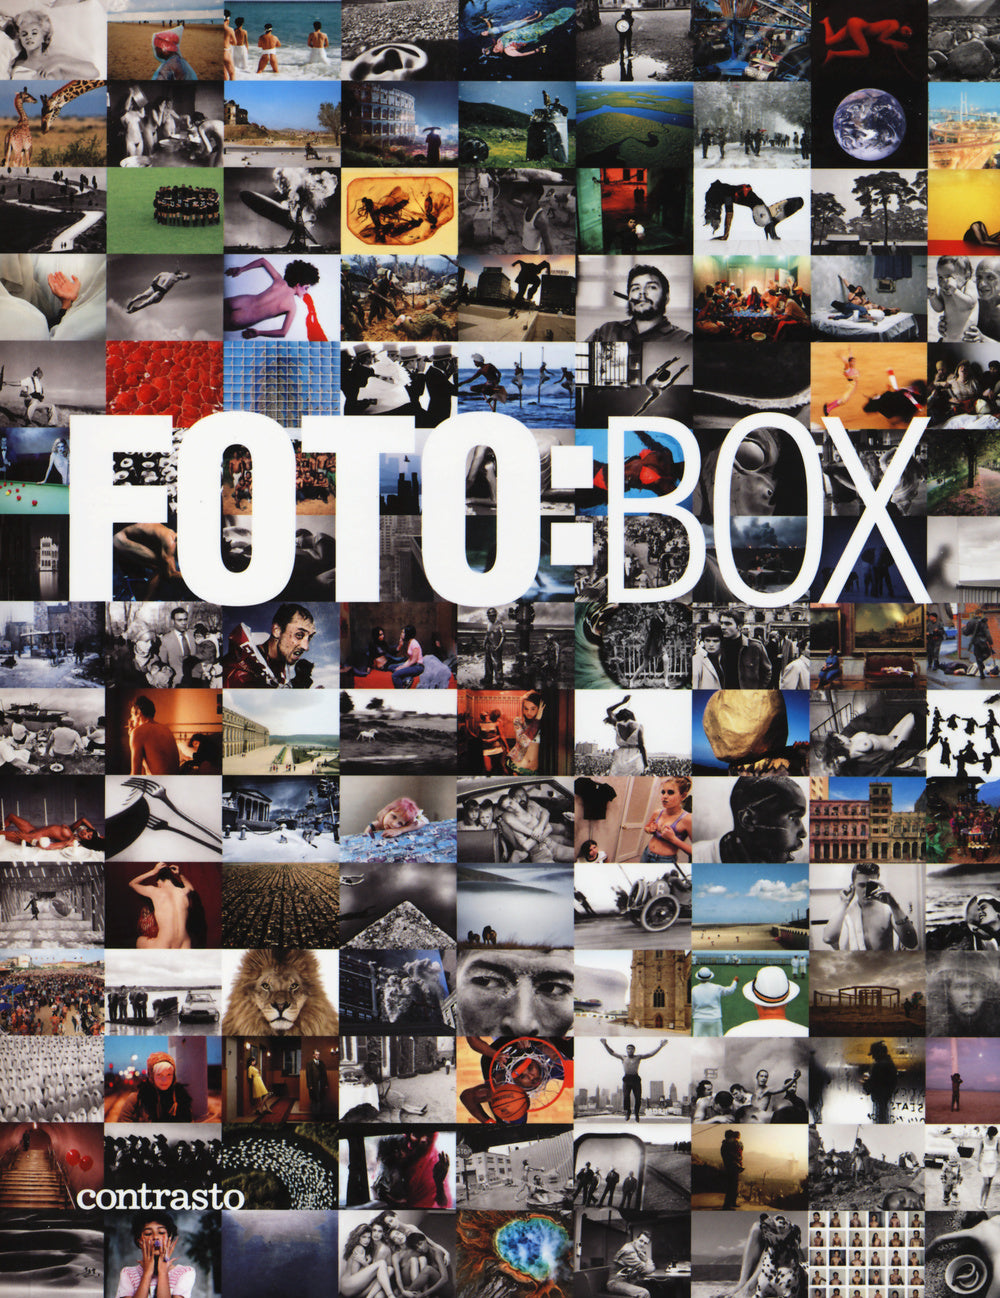 Fotobox. Le immagini dei più grandi maestri della fotografia internazionale. Ediz. illustrata